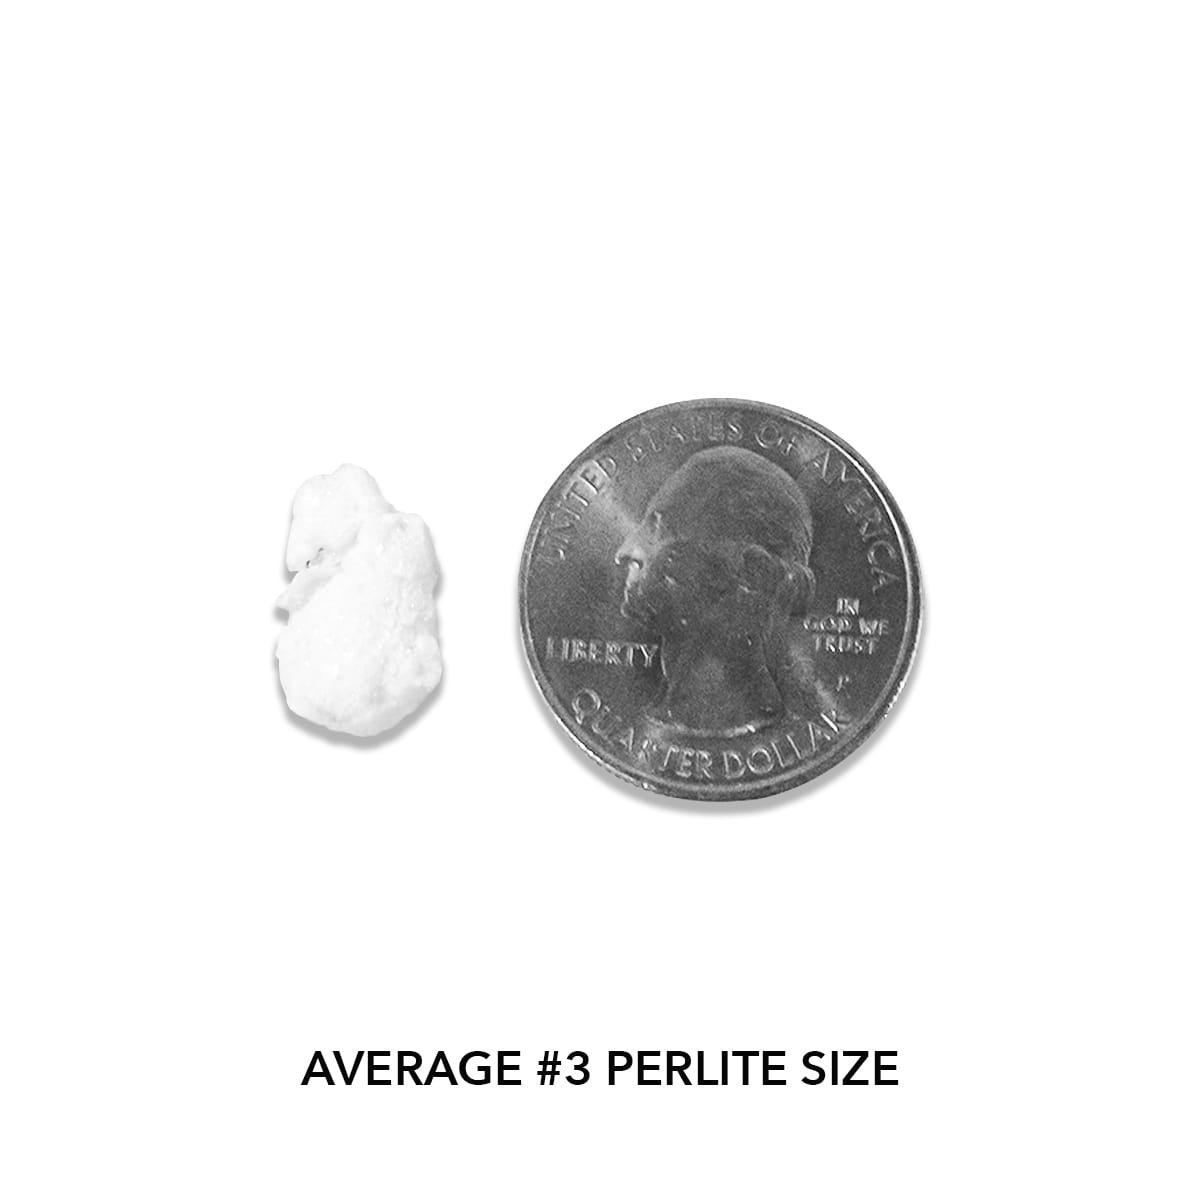 Pahroc Perlite #3 - Actual Size